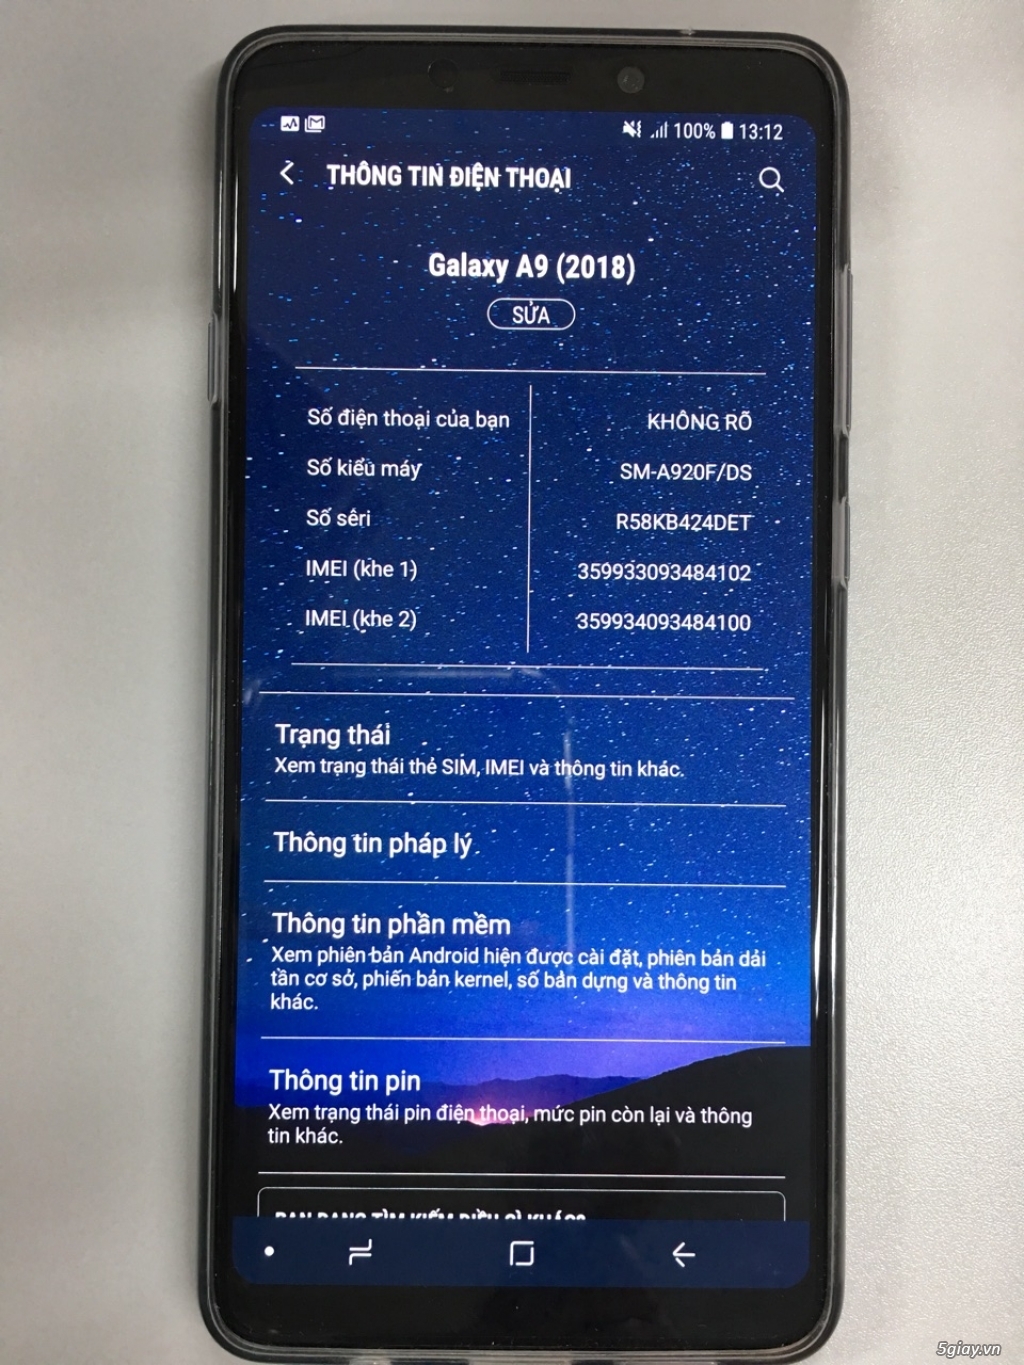 Samsung Galaxy A9 (2018) TGDĐ mua ít xài - 3